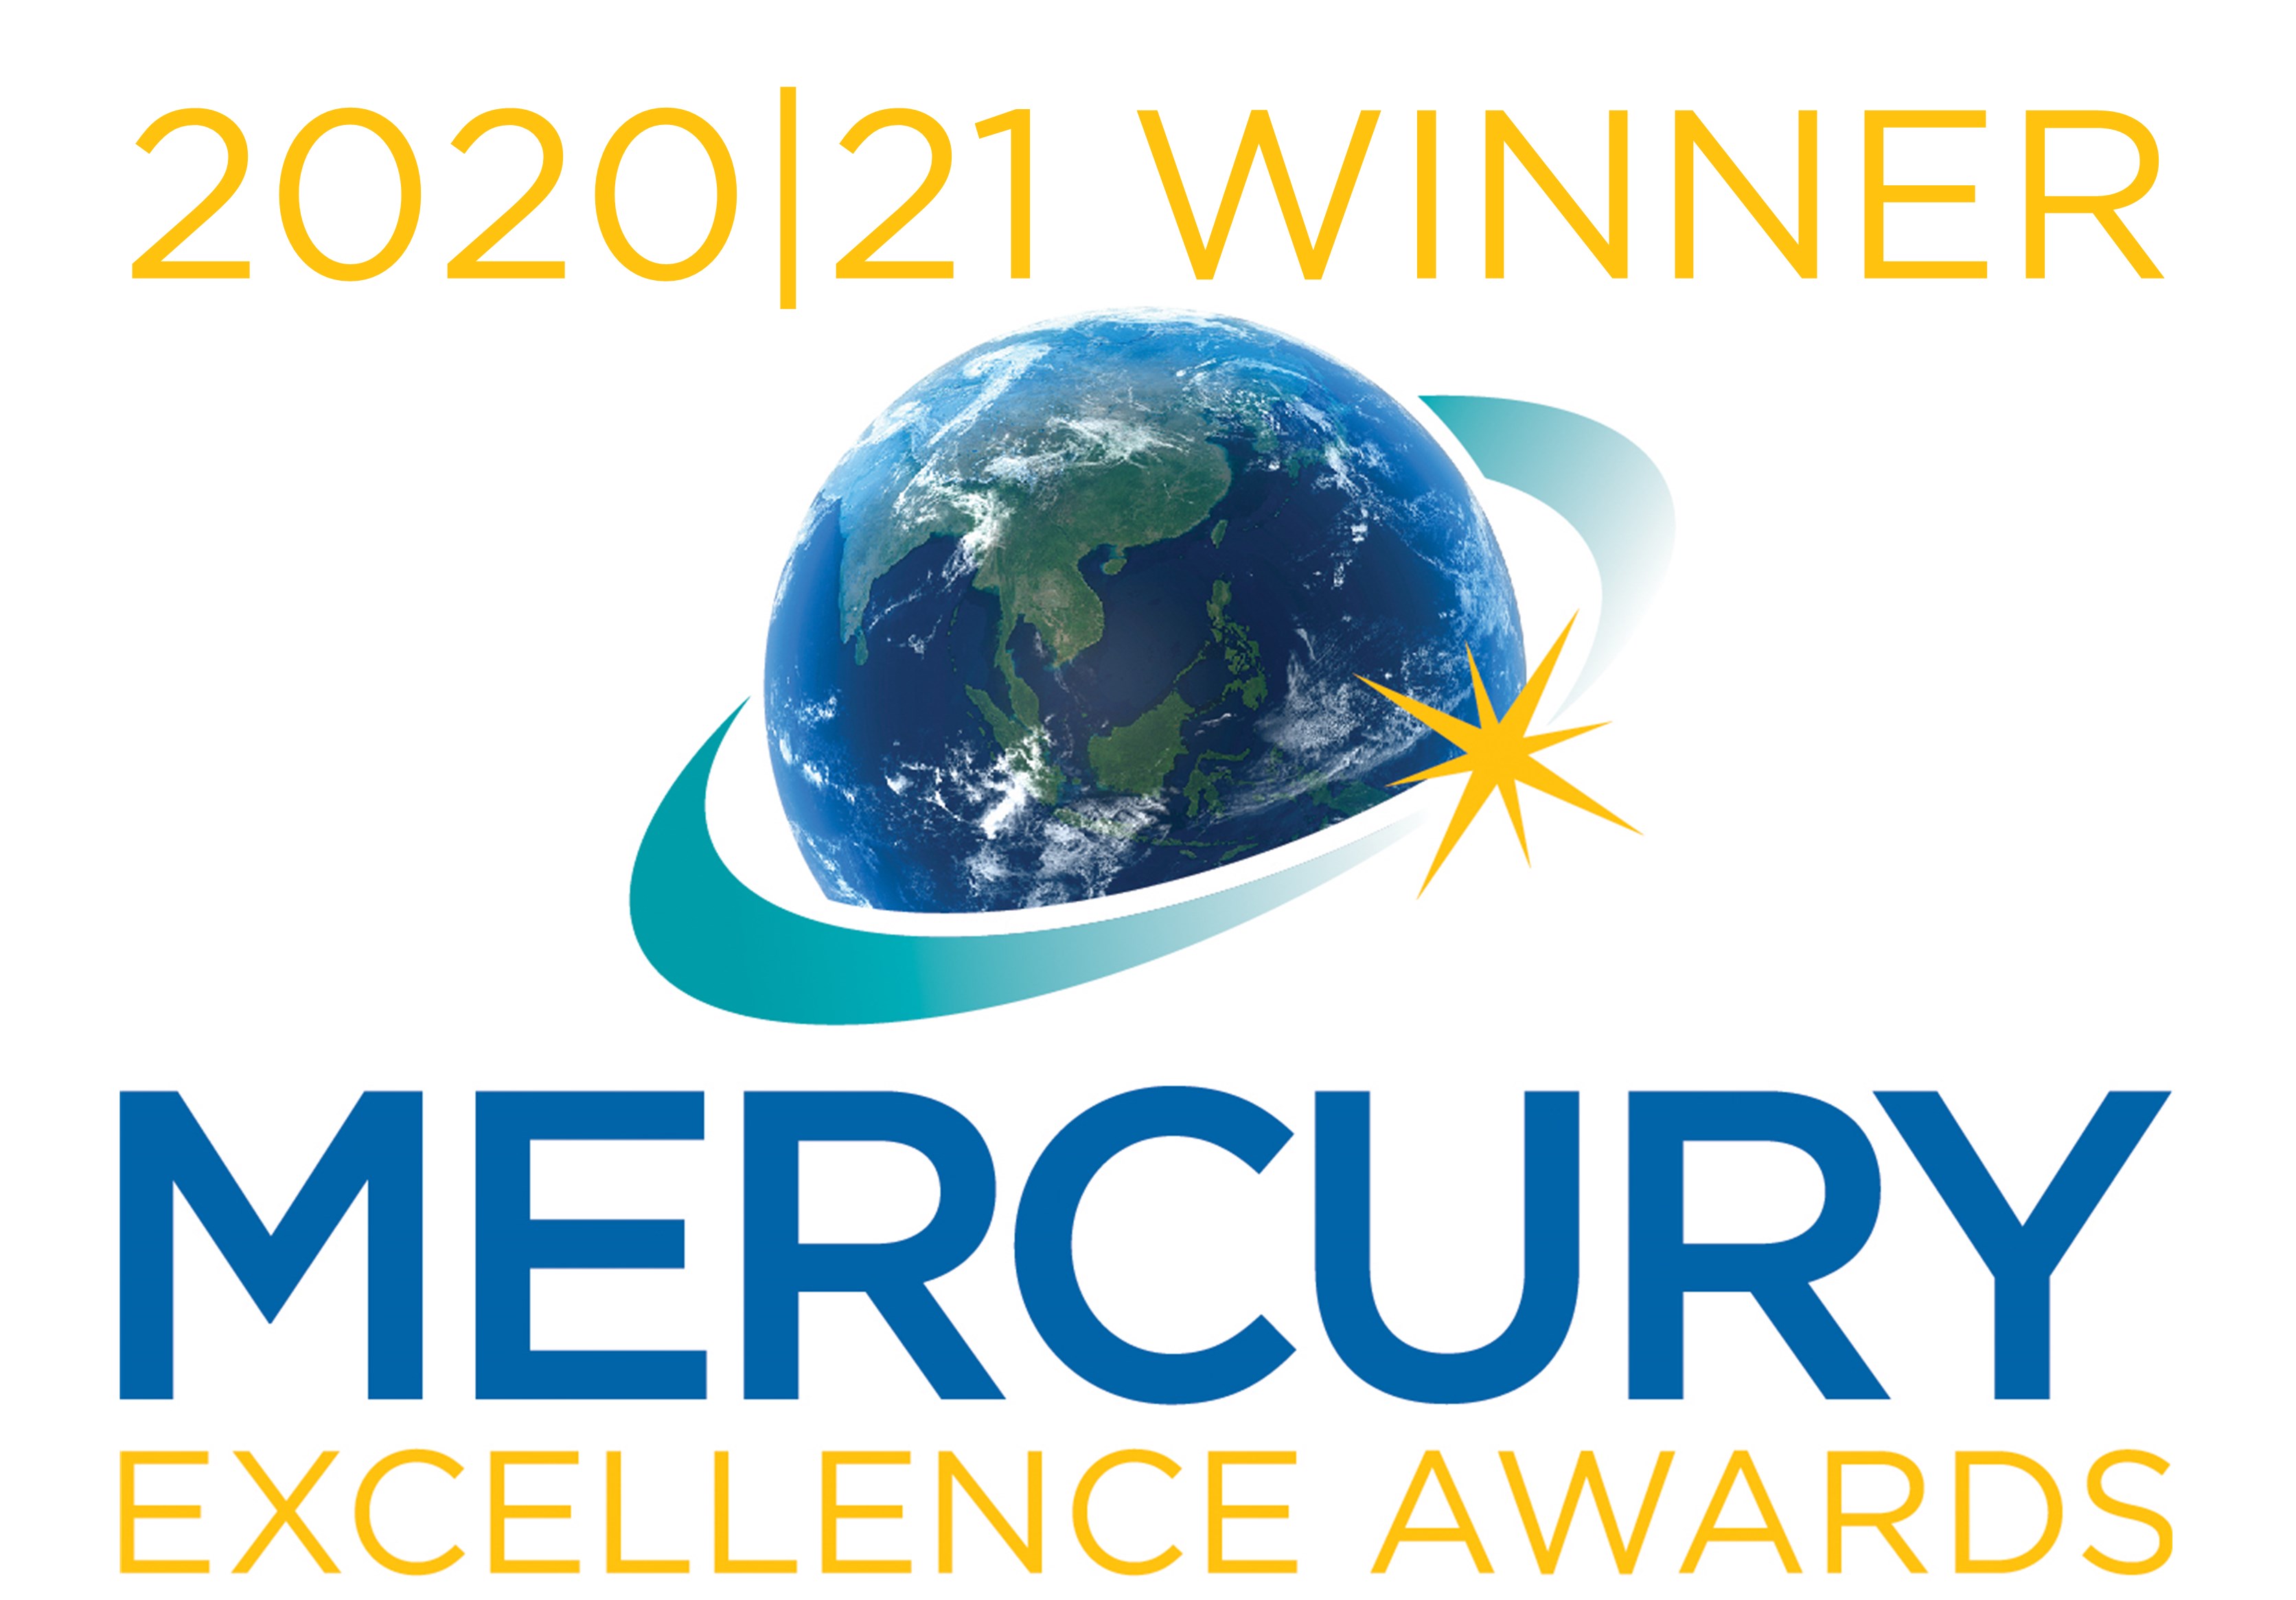 「活動與成就」短片<<無懼挑戰 邁步向前>>獲2020/2021 Mercury Excellence Awards頒發「影片 - 榮譽大獎」的最高殊榮